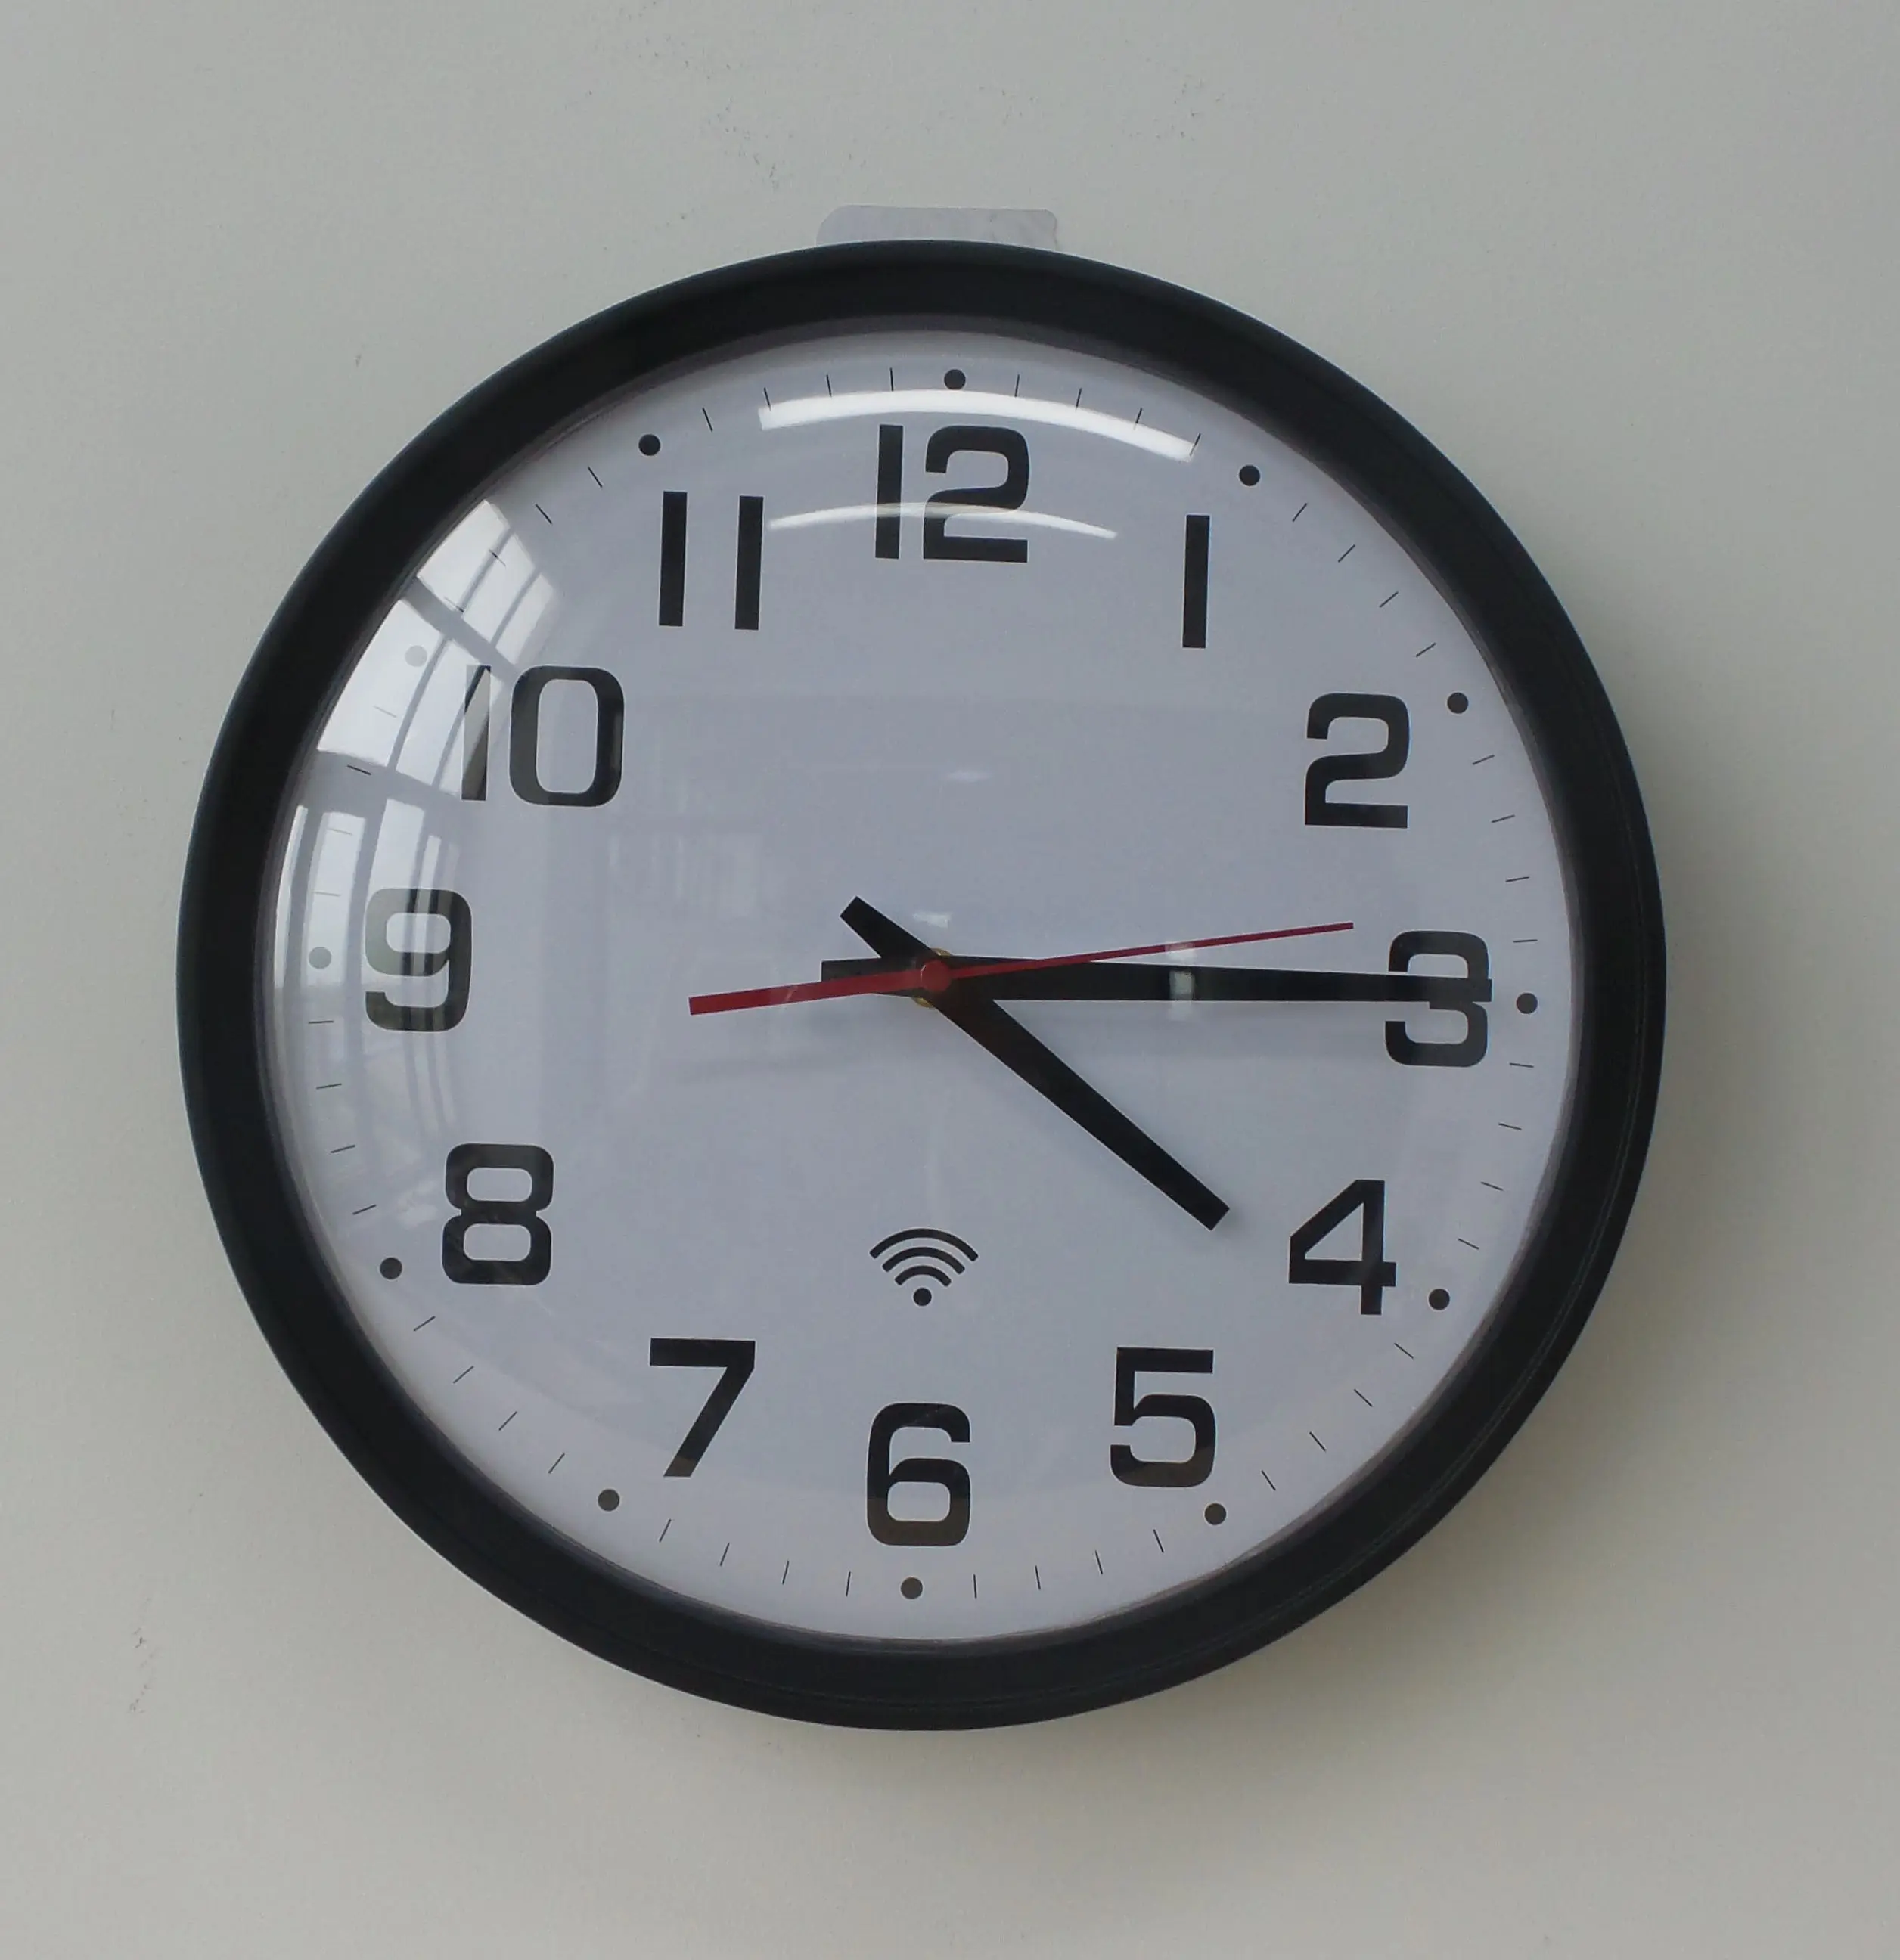 Аналоговые часы NTP с Wi-Fi, синхронизация в сети, Совместимость с часовыми поясами мира